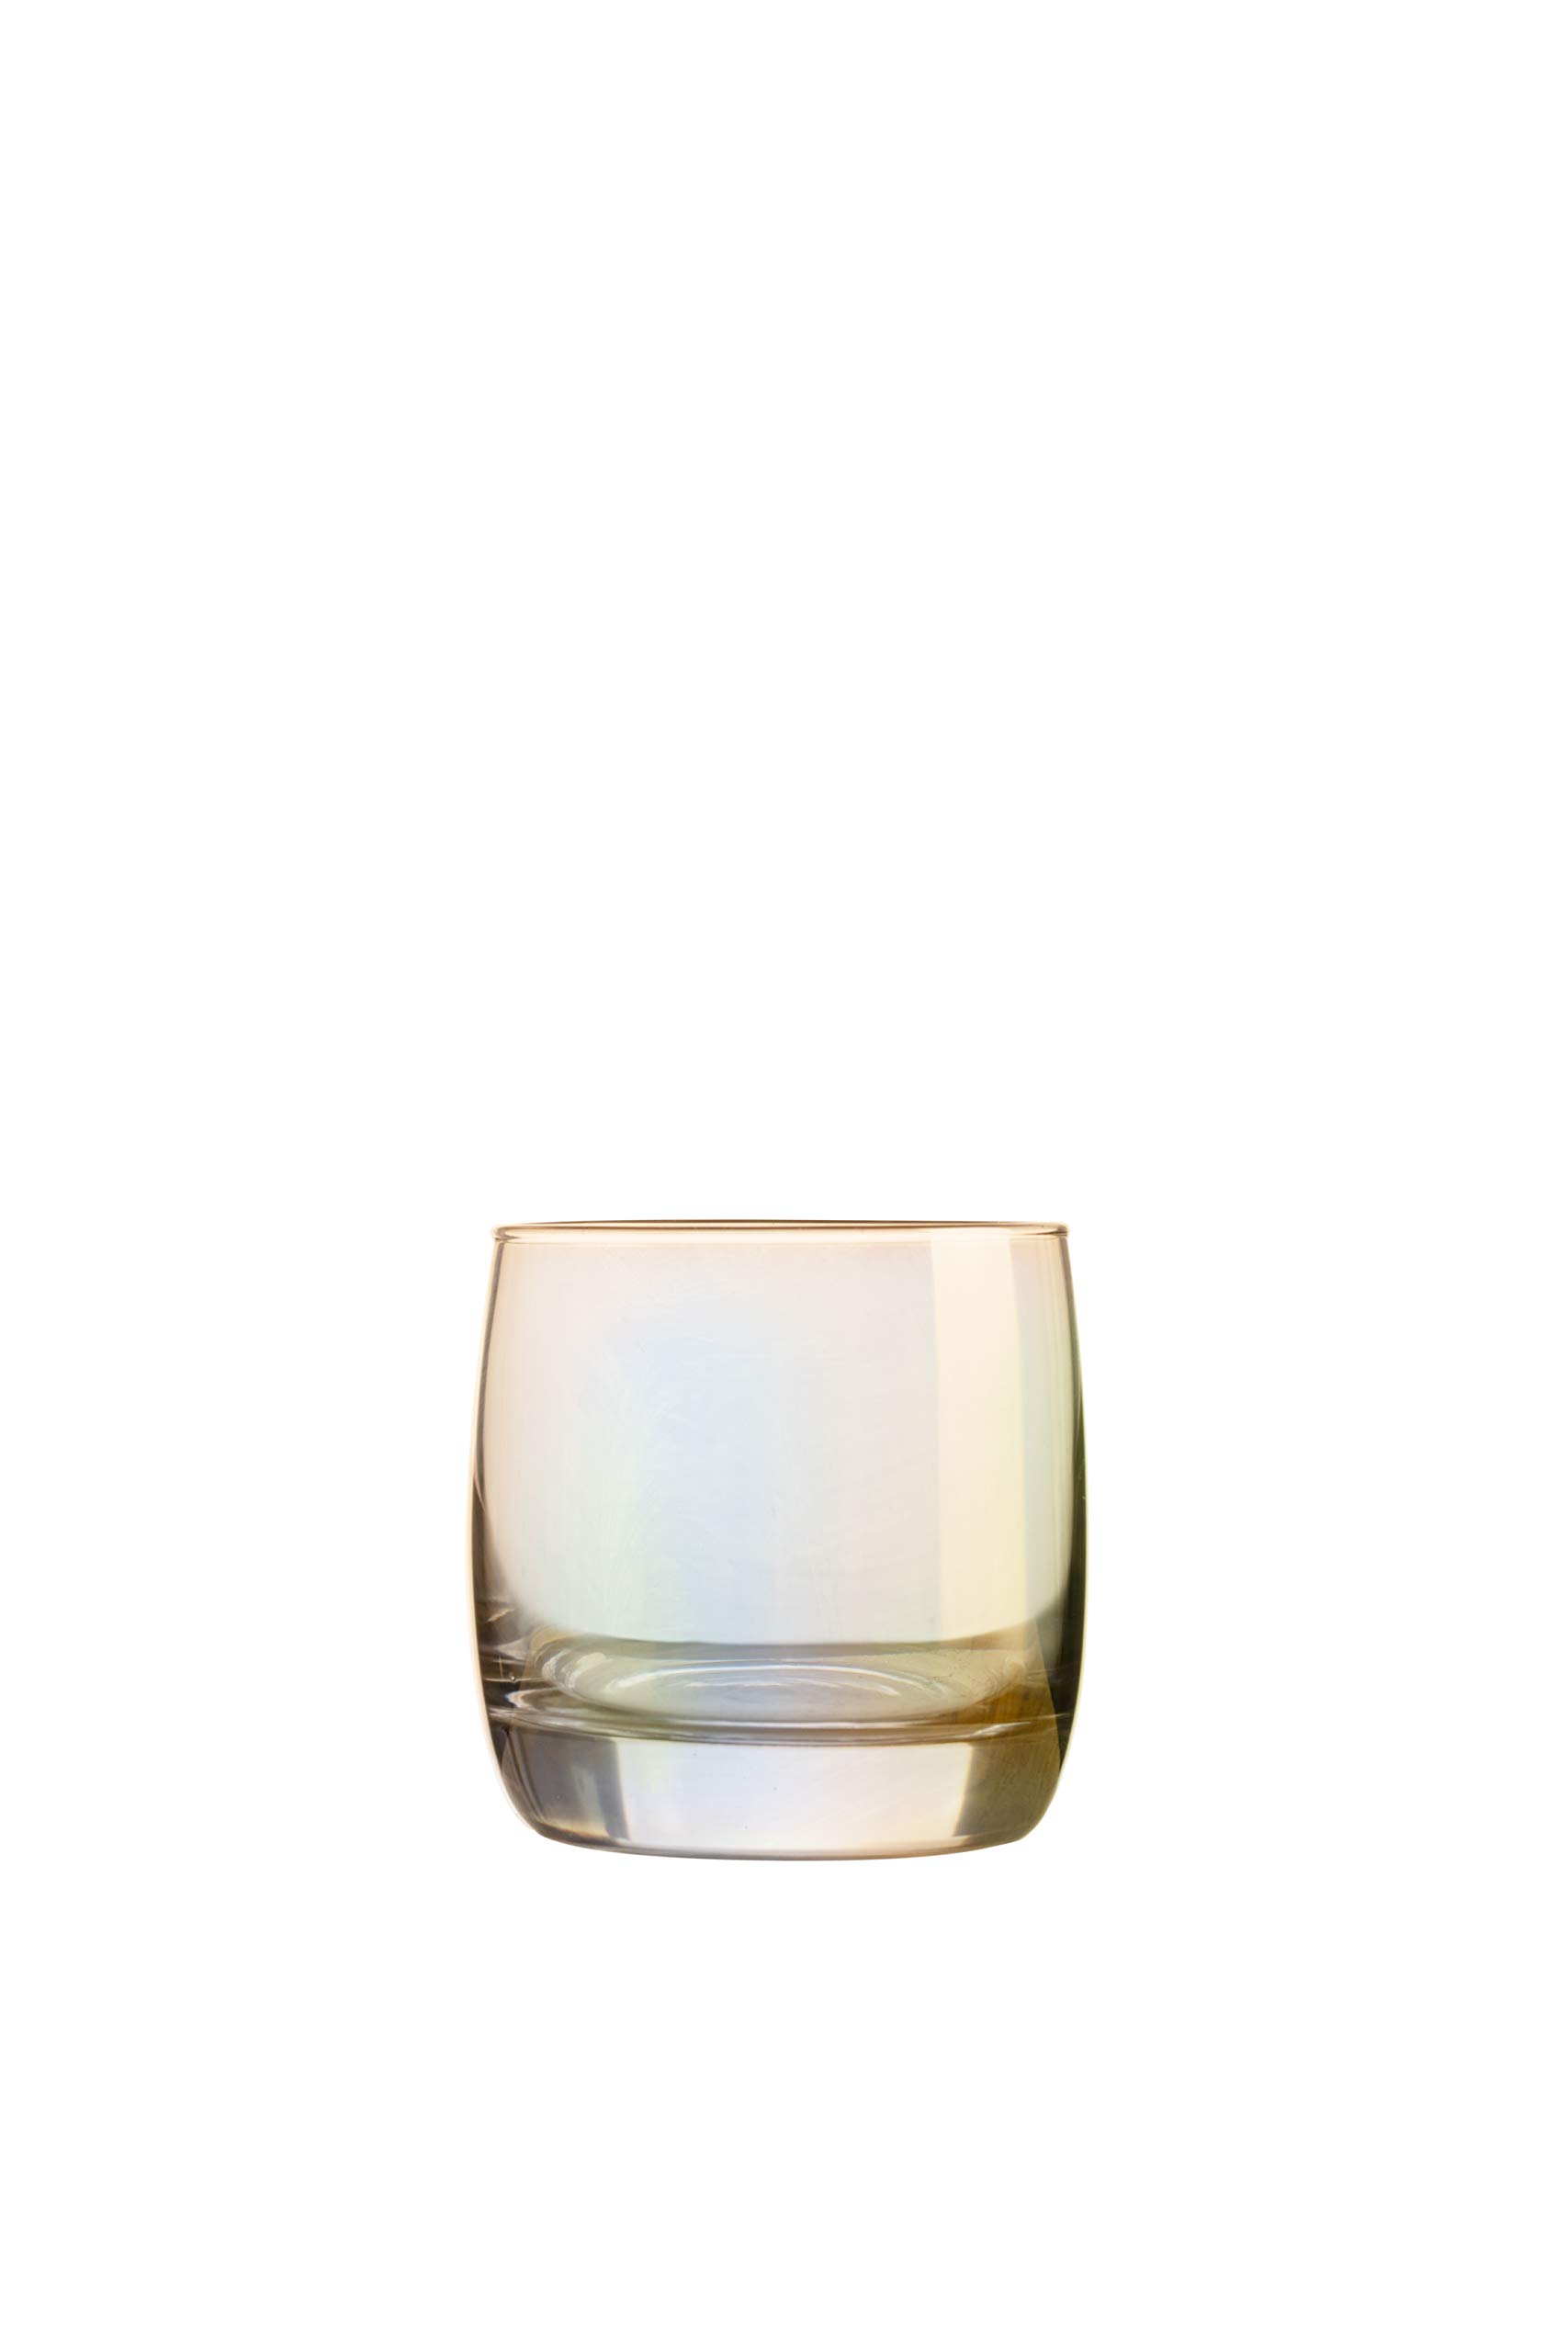 CreaTable, 21347, Serie SHINY Gold, 4-teiliges Gläserset, Whiskybecher, spülmaschinen-und mikrowellengeeignet, Made in Europe, Glas, 31 centiliters